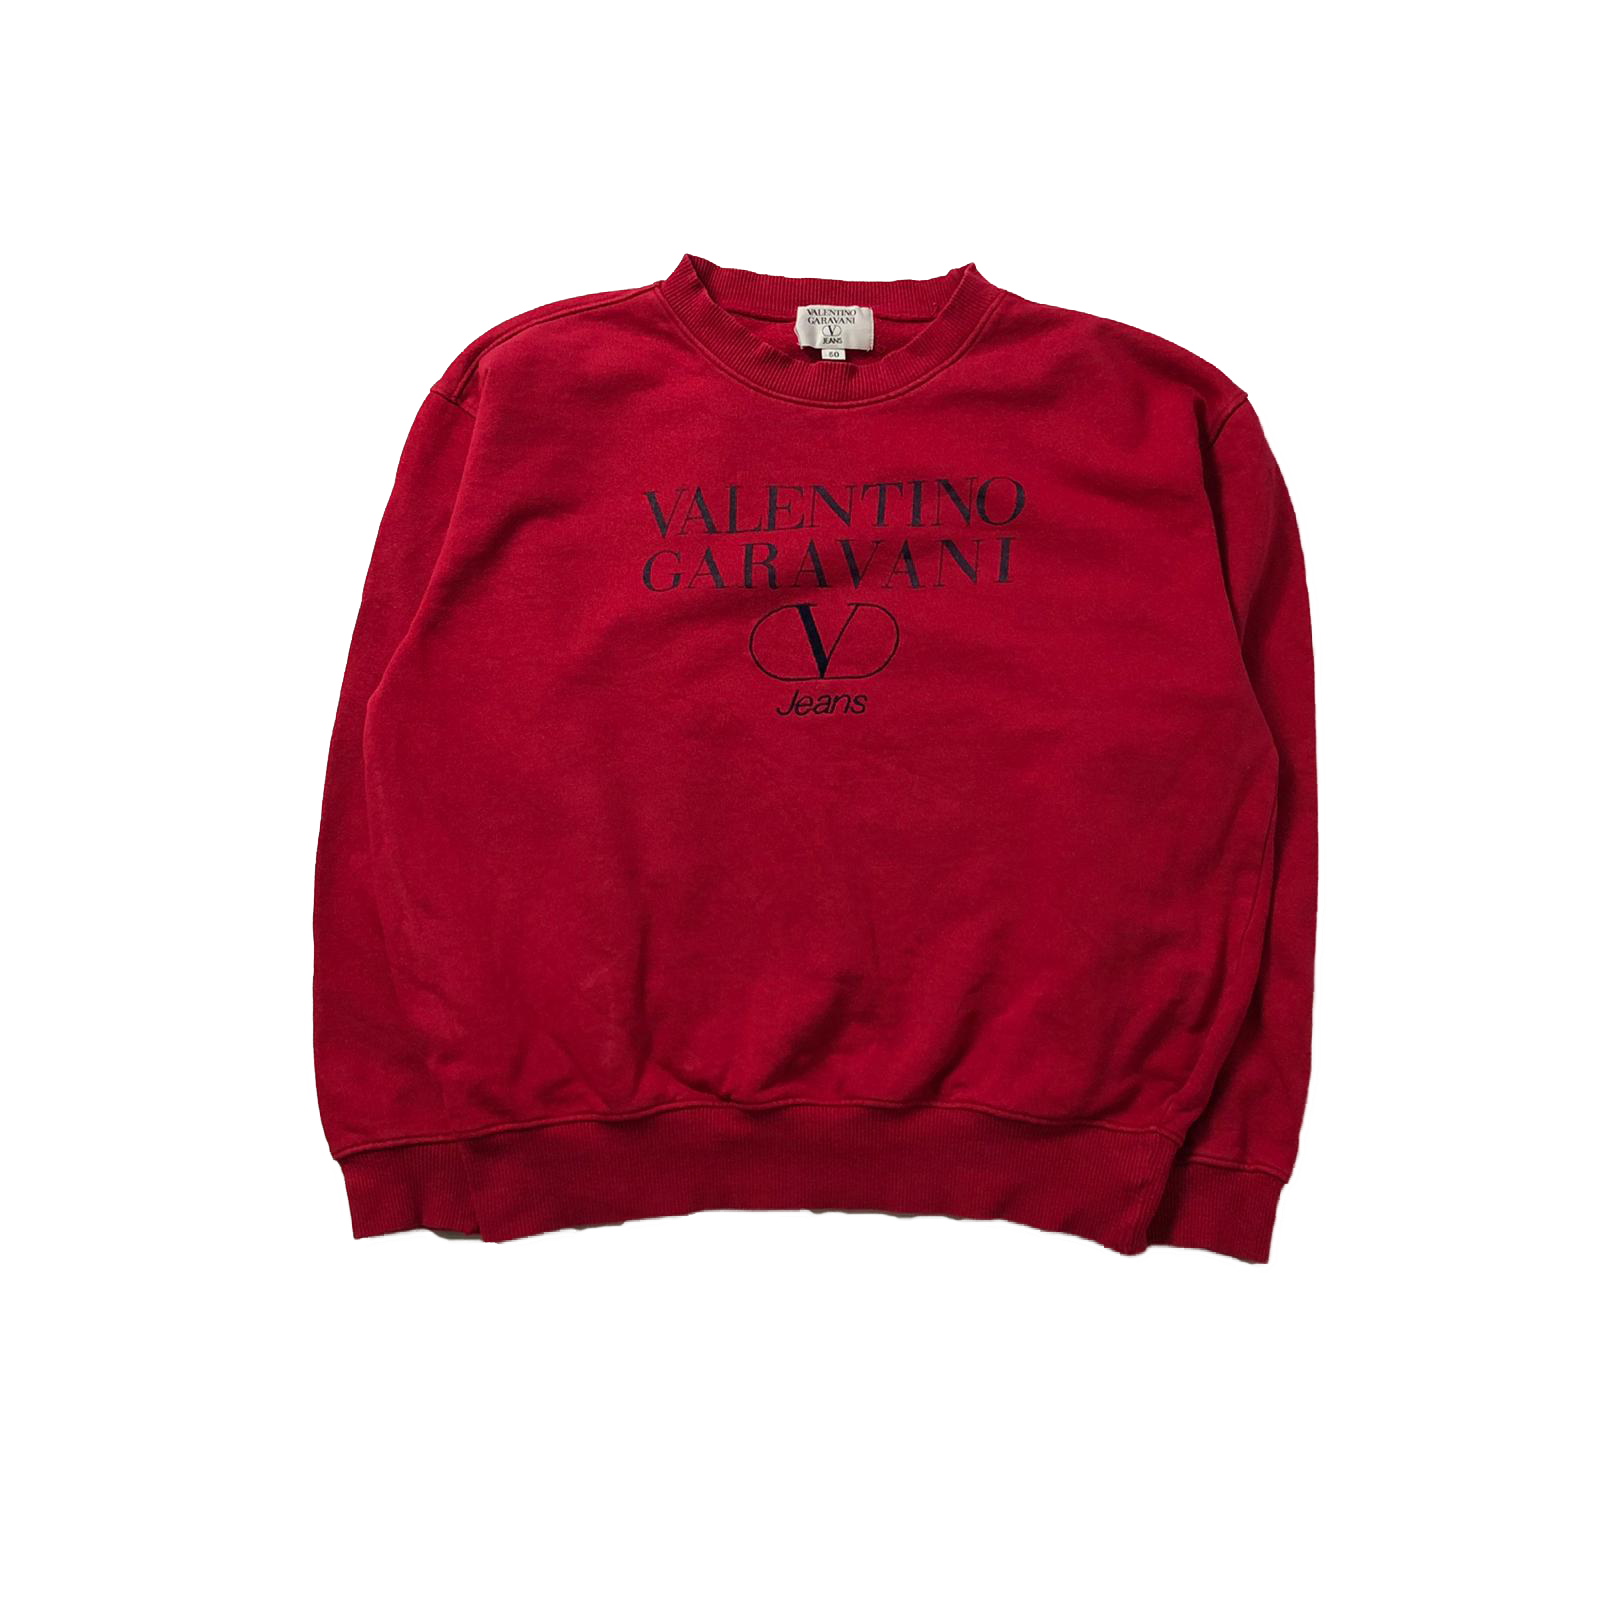 90's Valentino sweatshirt